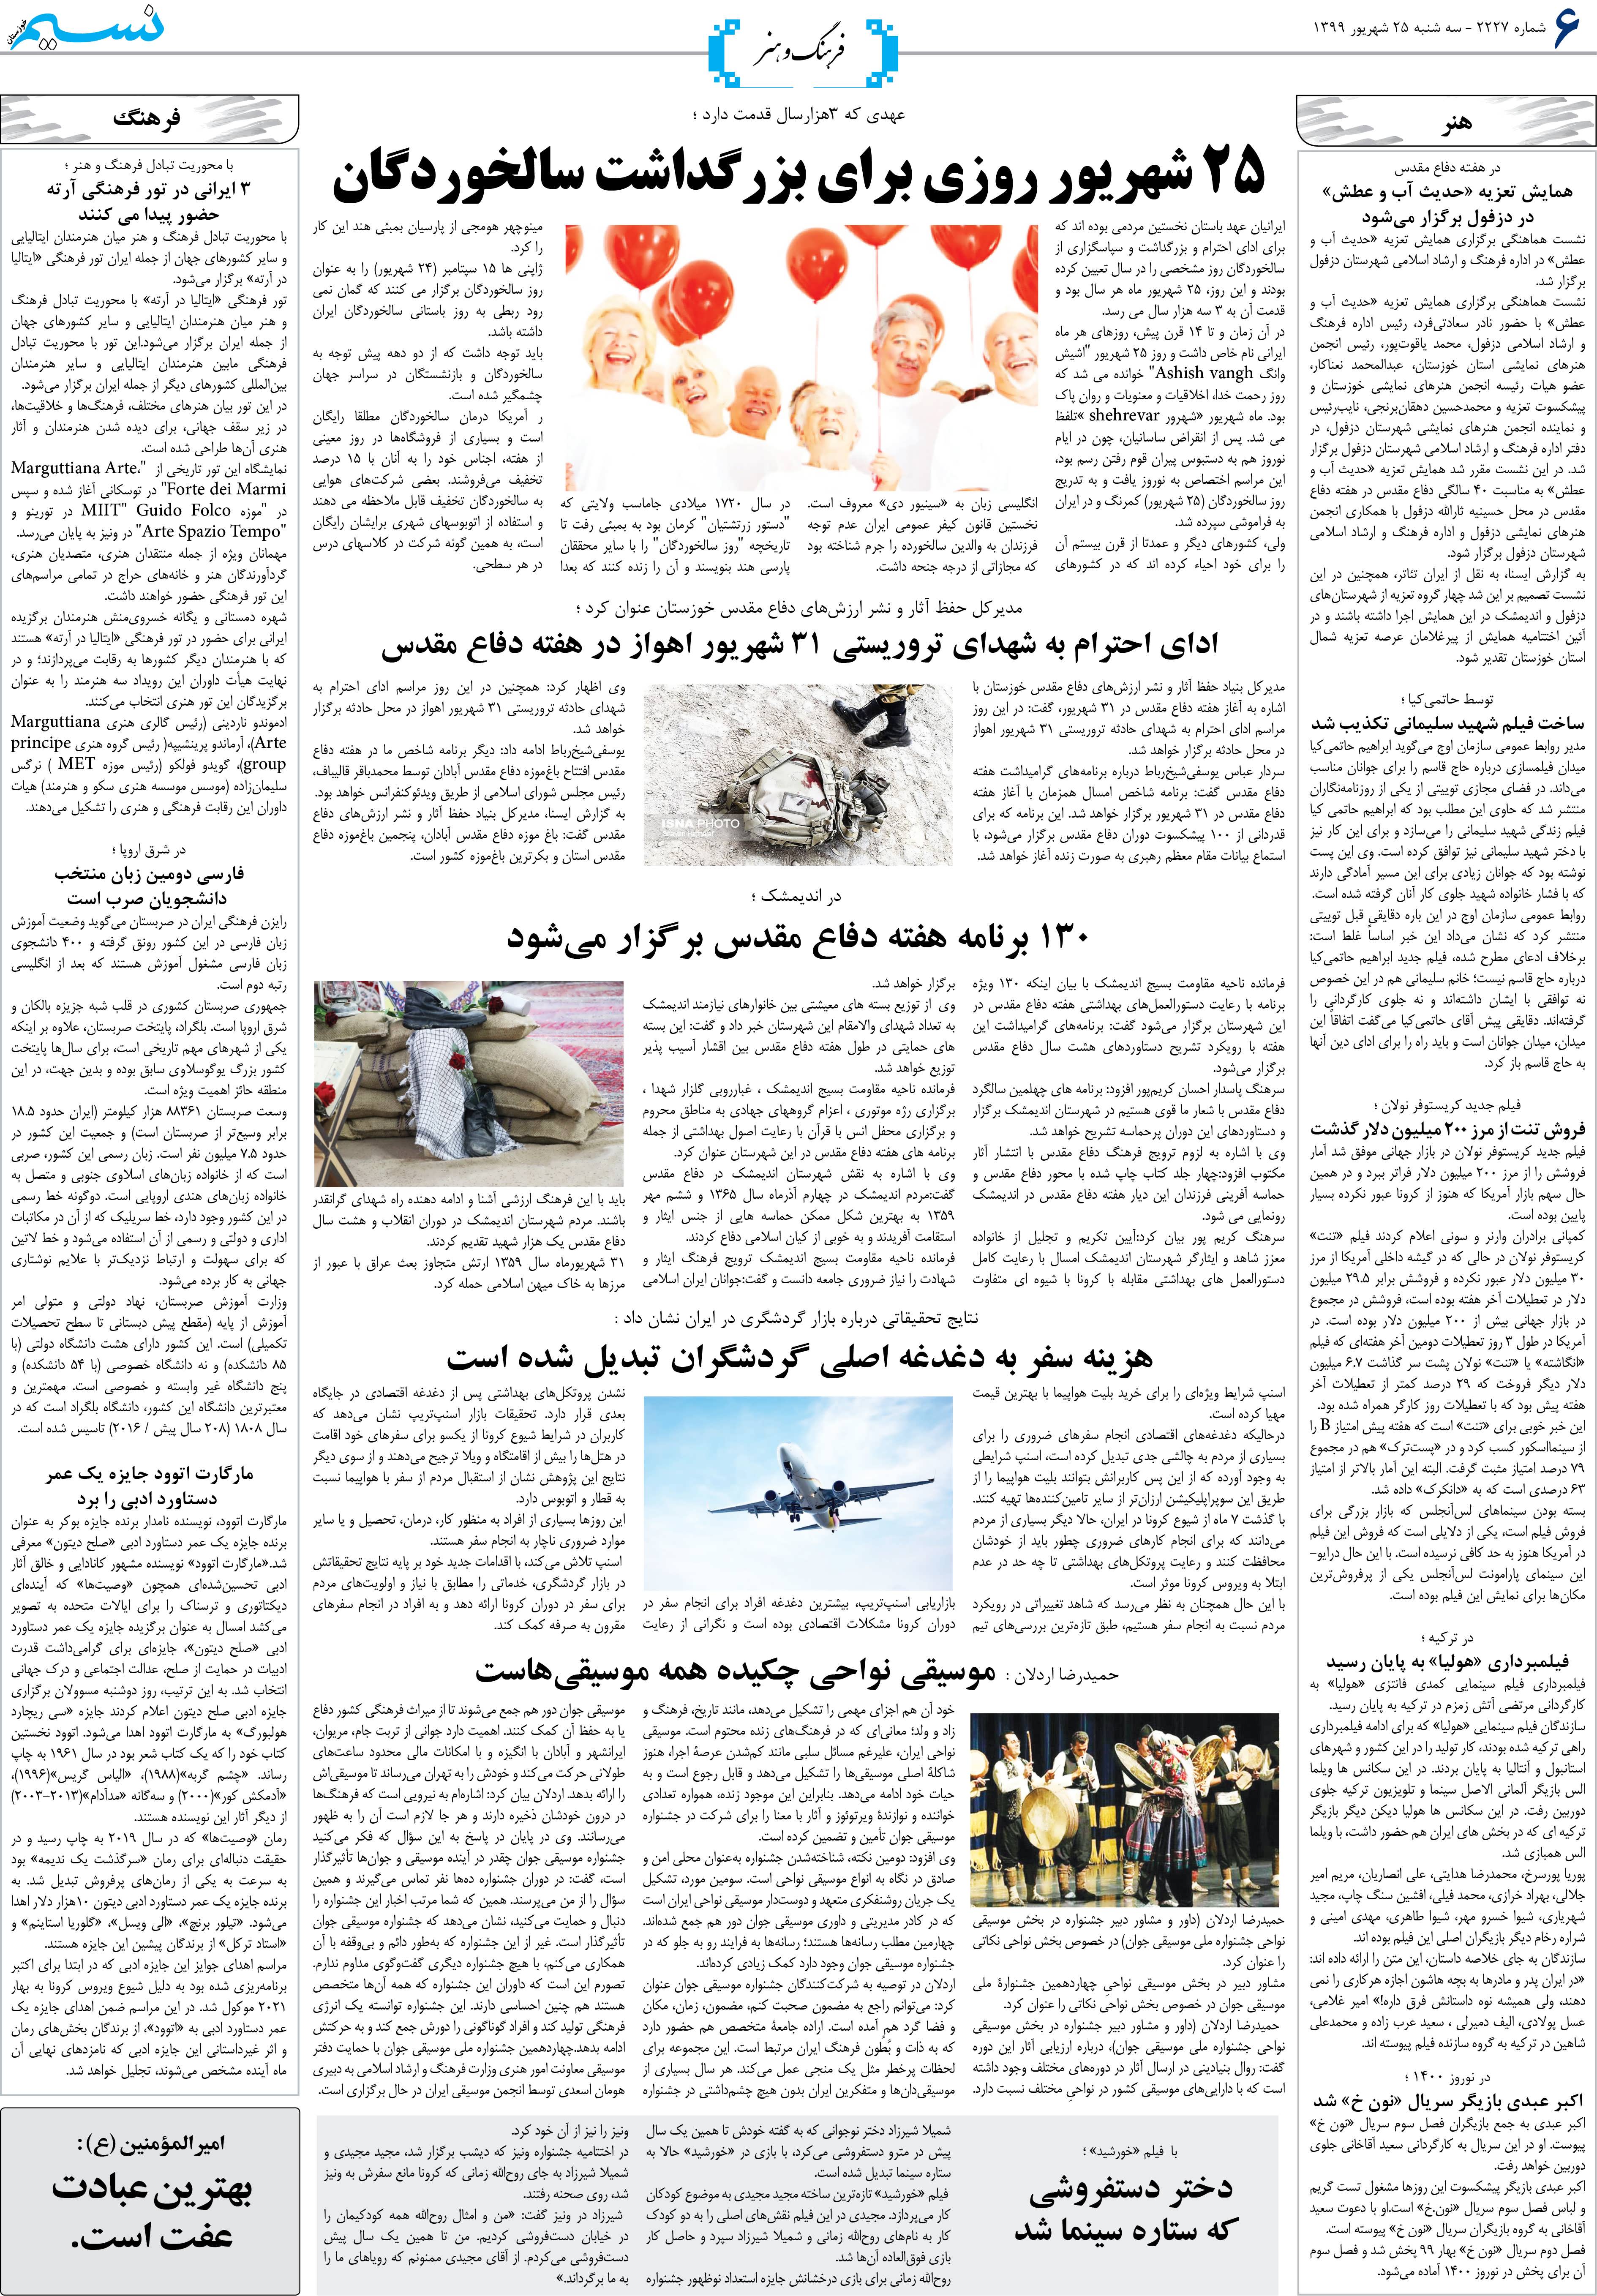 صفحه فرهنگ و هنر روزنامه نسیم شماره 2227